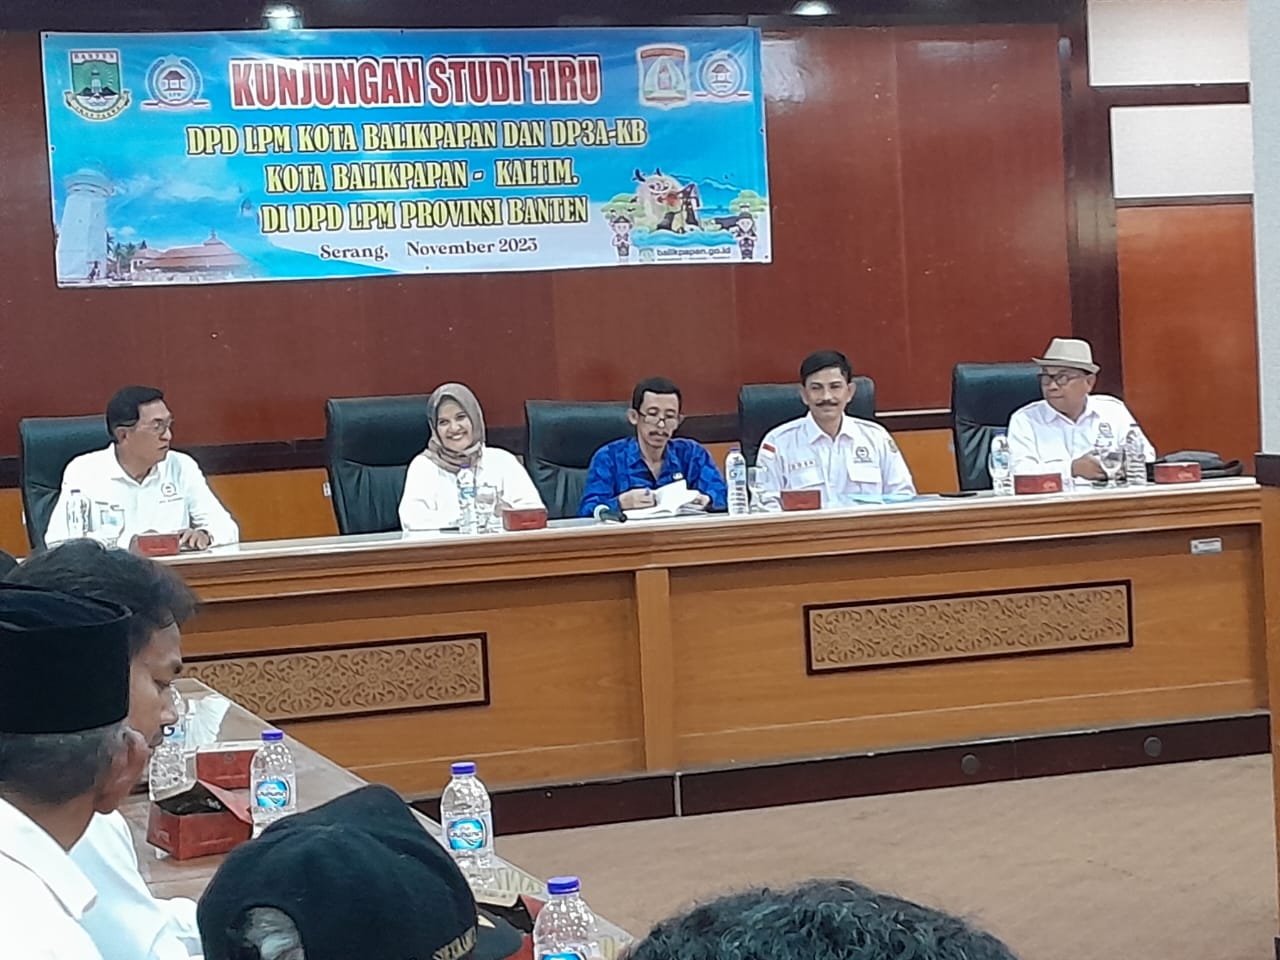 Ketiga Kali, LPM Banten Jadi Lokasi Studi Tiru